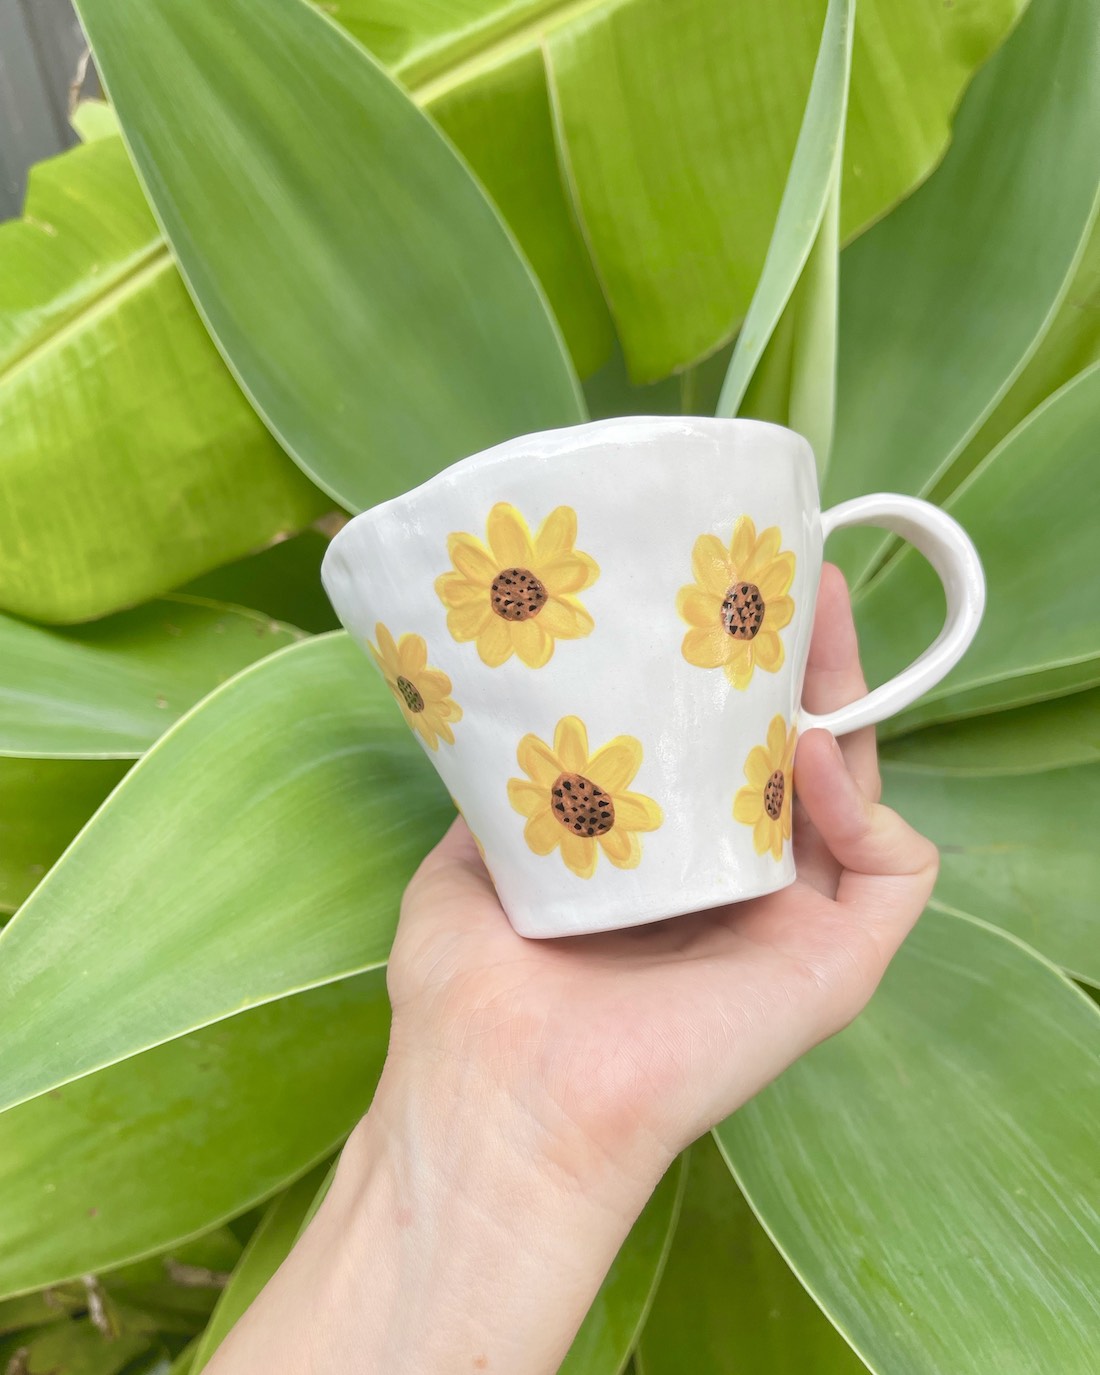 Sunflower mug from Ahyayah ceramics